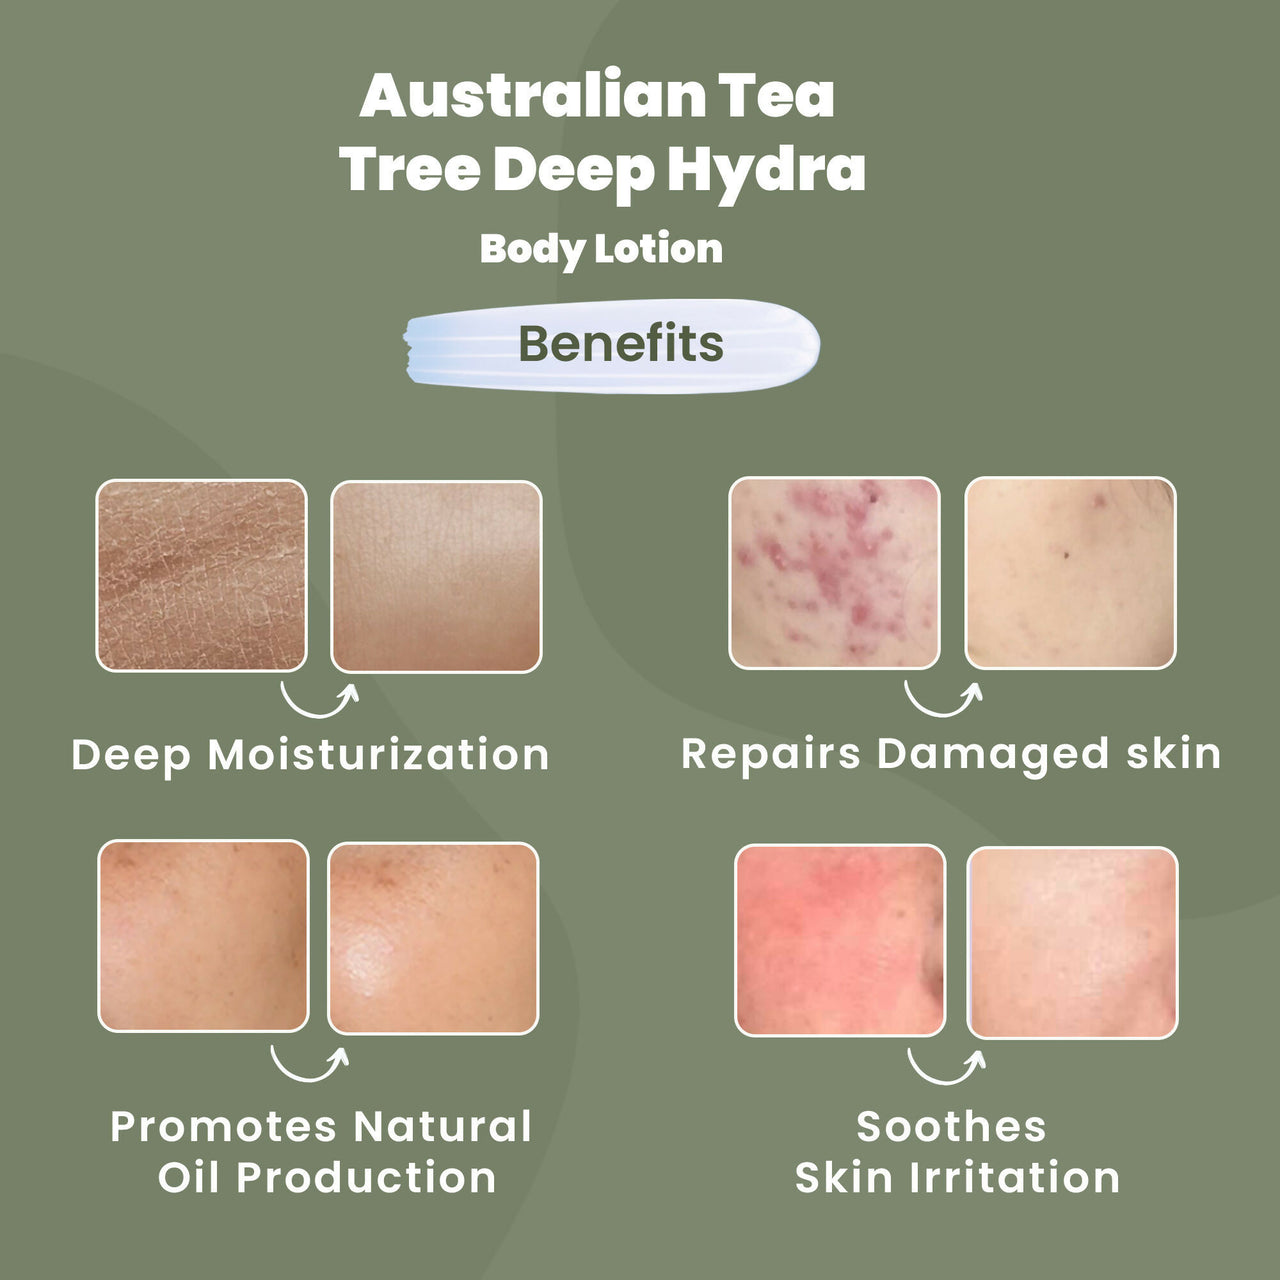 Wild Oak Shea Butter & Australian Tea Tree Body Lotion - Distacart